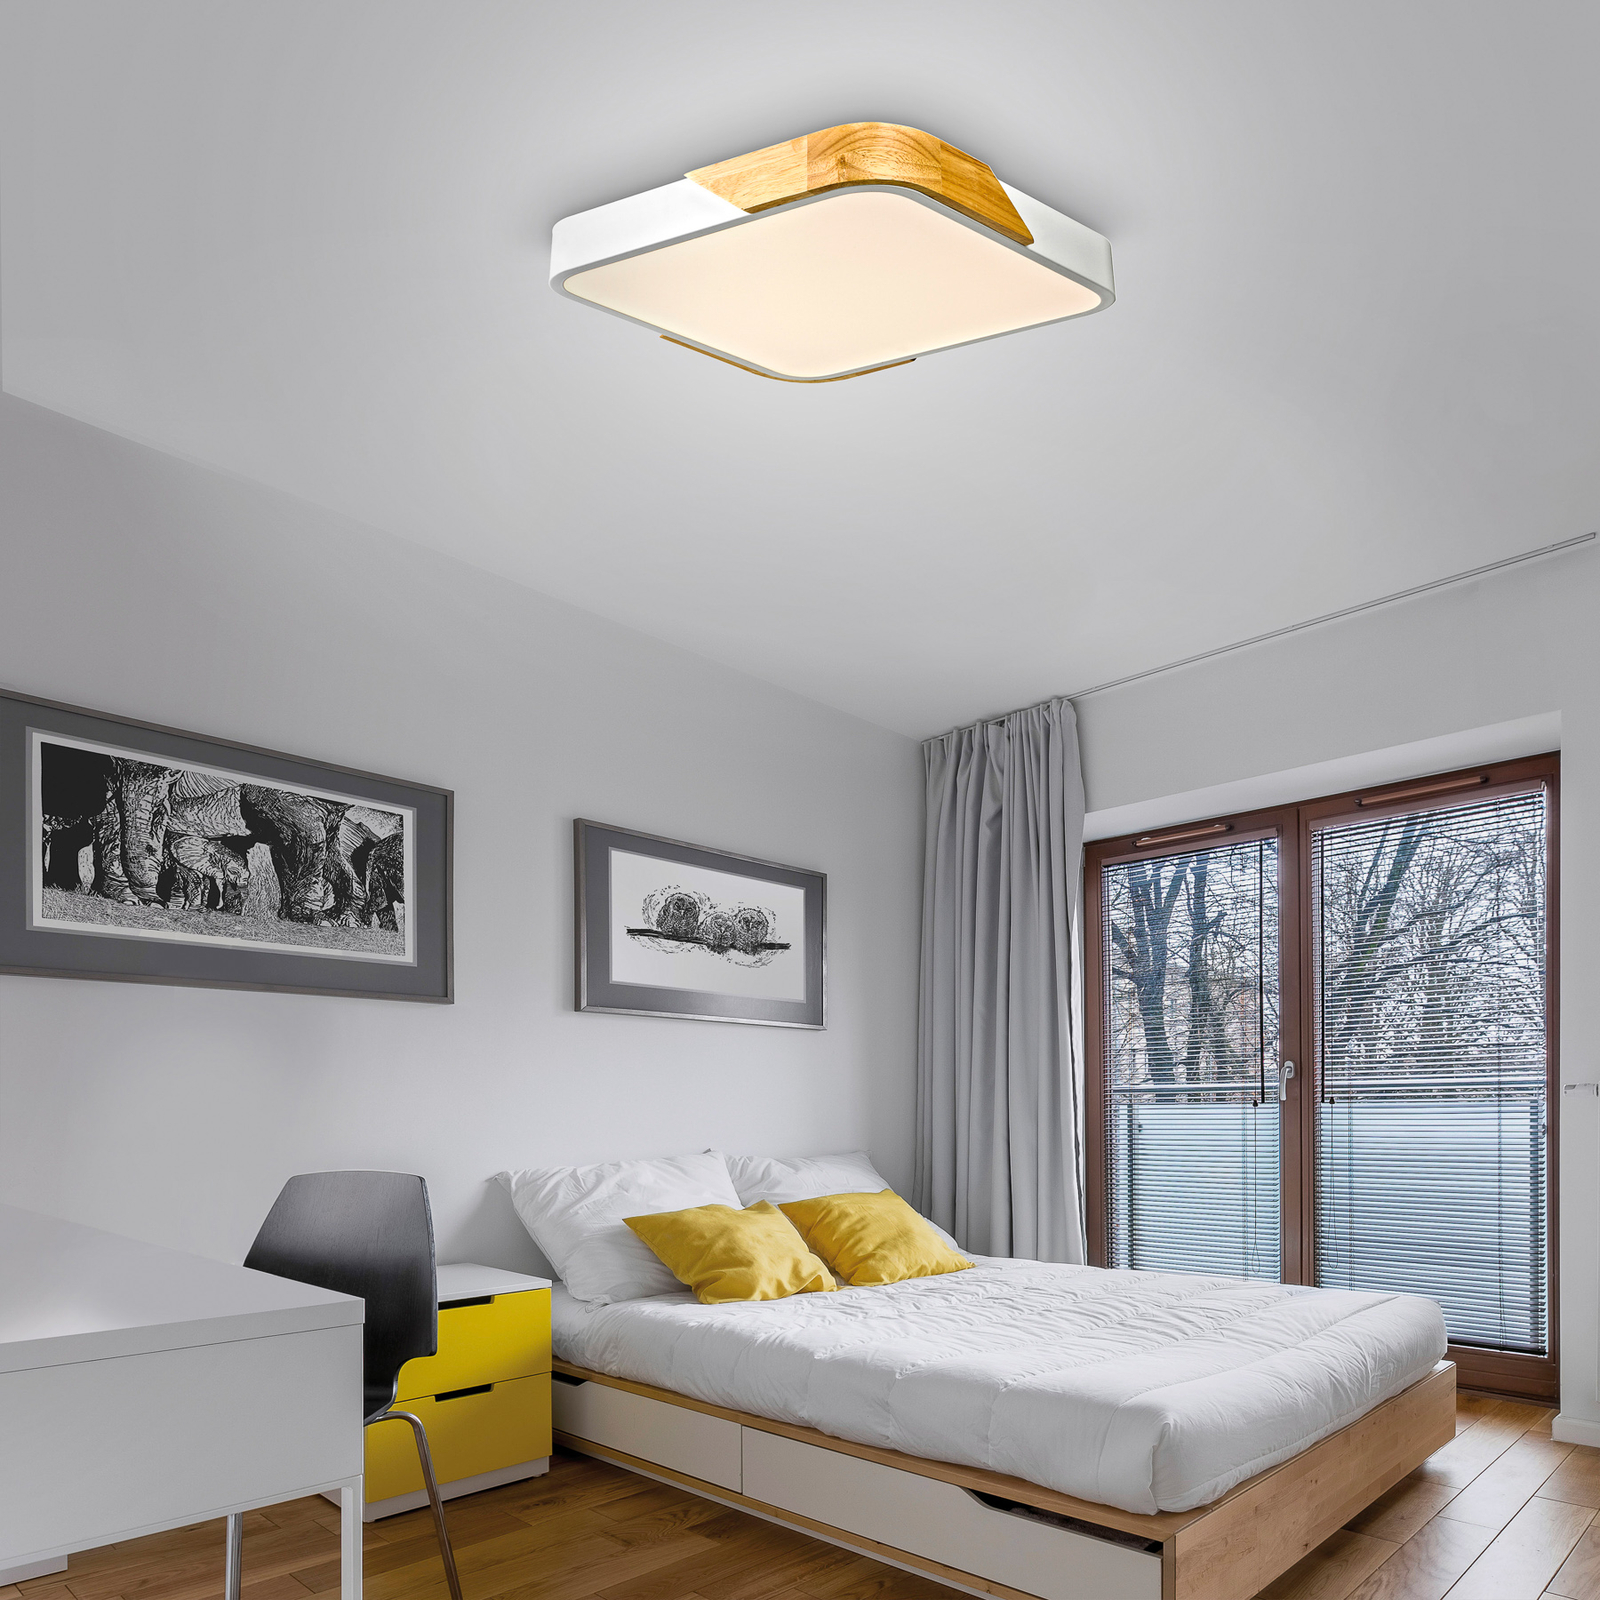 JUST LIGHT. LED ceiling light Bila, white, 32x32 cm, wood